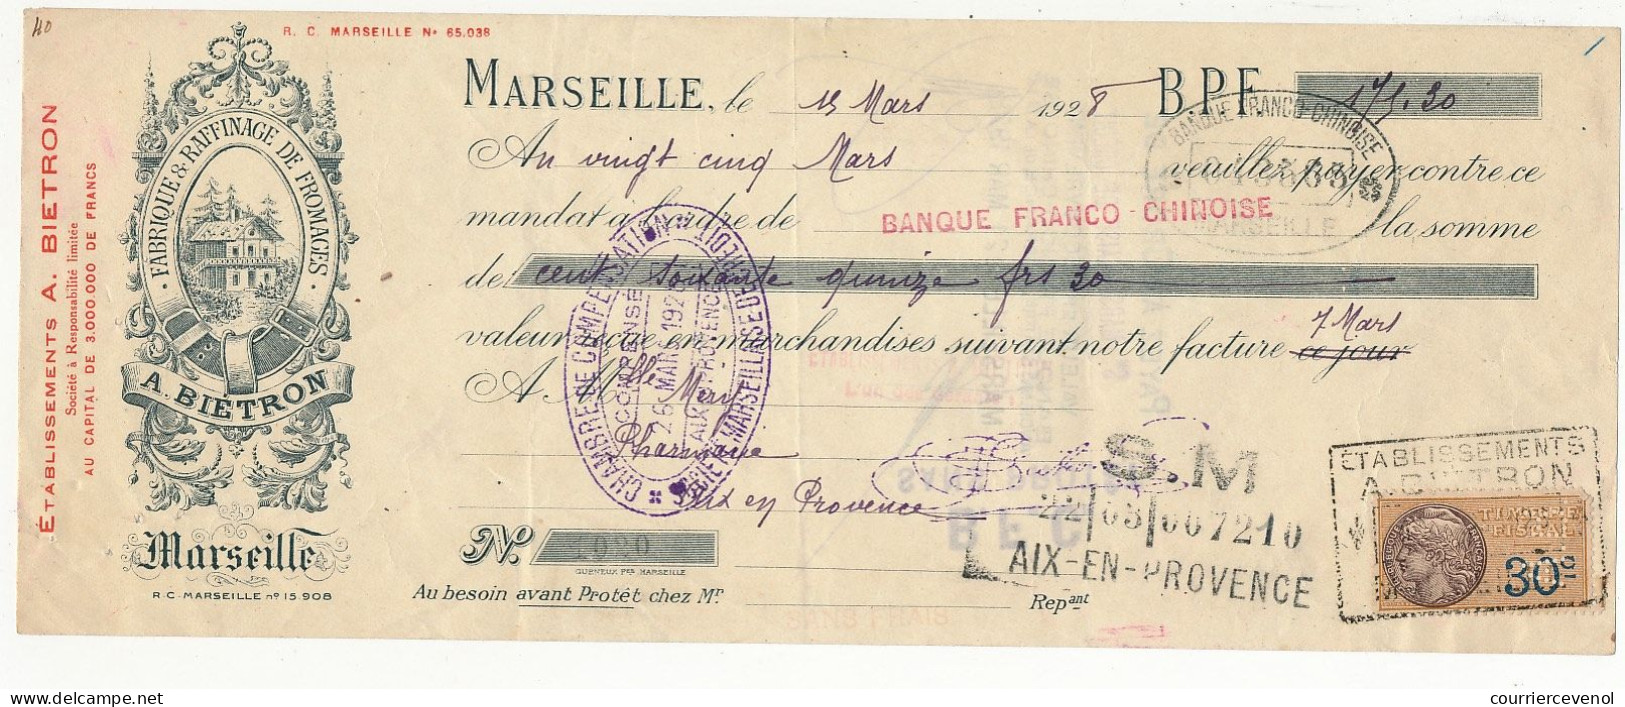 FRANCE - Traite A. Biétron (Fromages, Marseille) - Fiscal 30c Perforé A.B. - 1928 - Briefe U. Dokumente